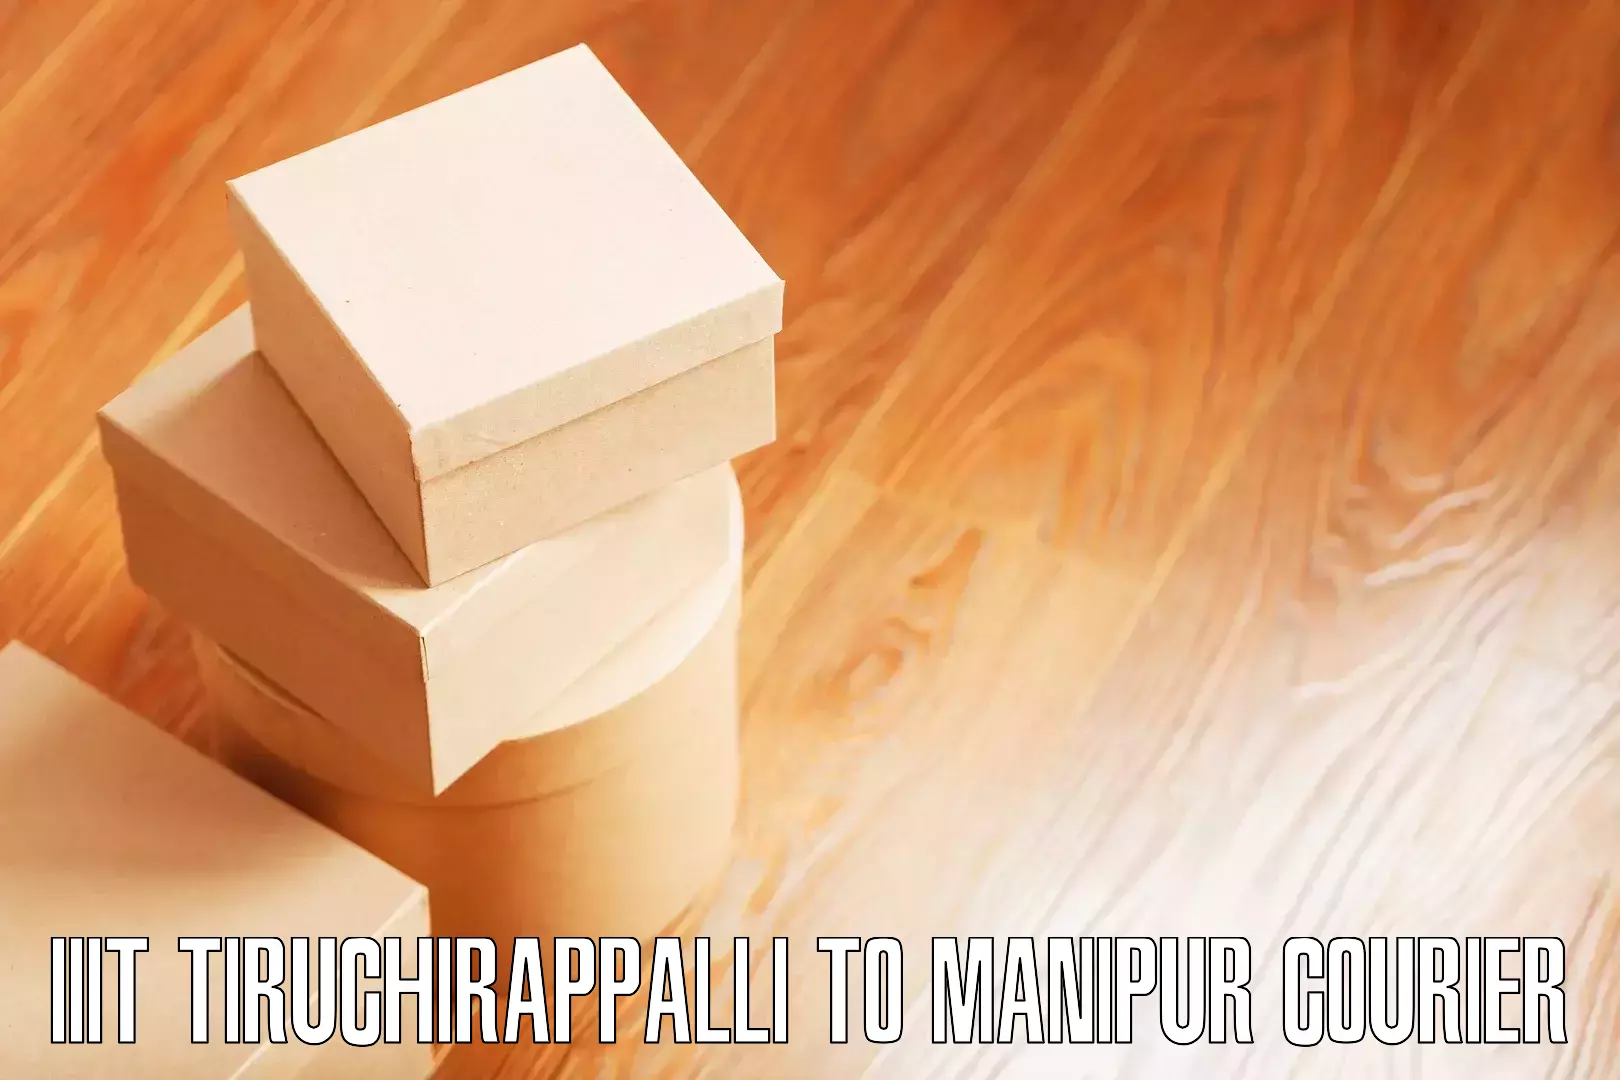 Efficient furniture movers IIIT Tiruchirappalli to Manipur